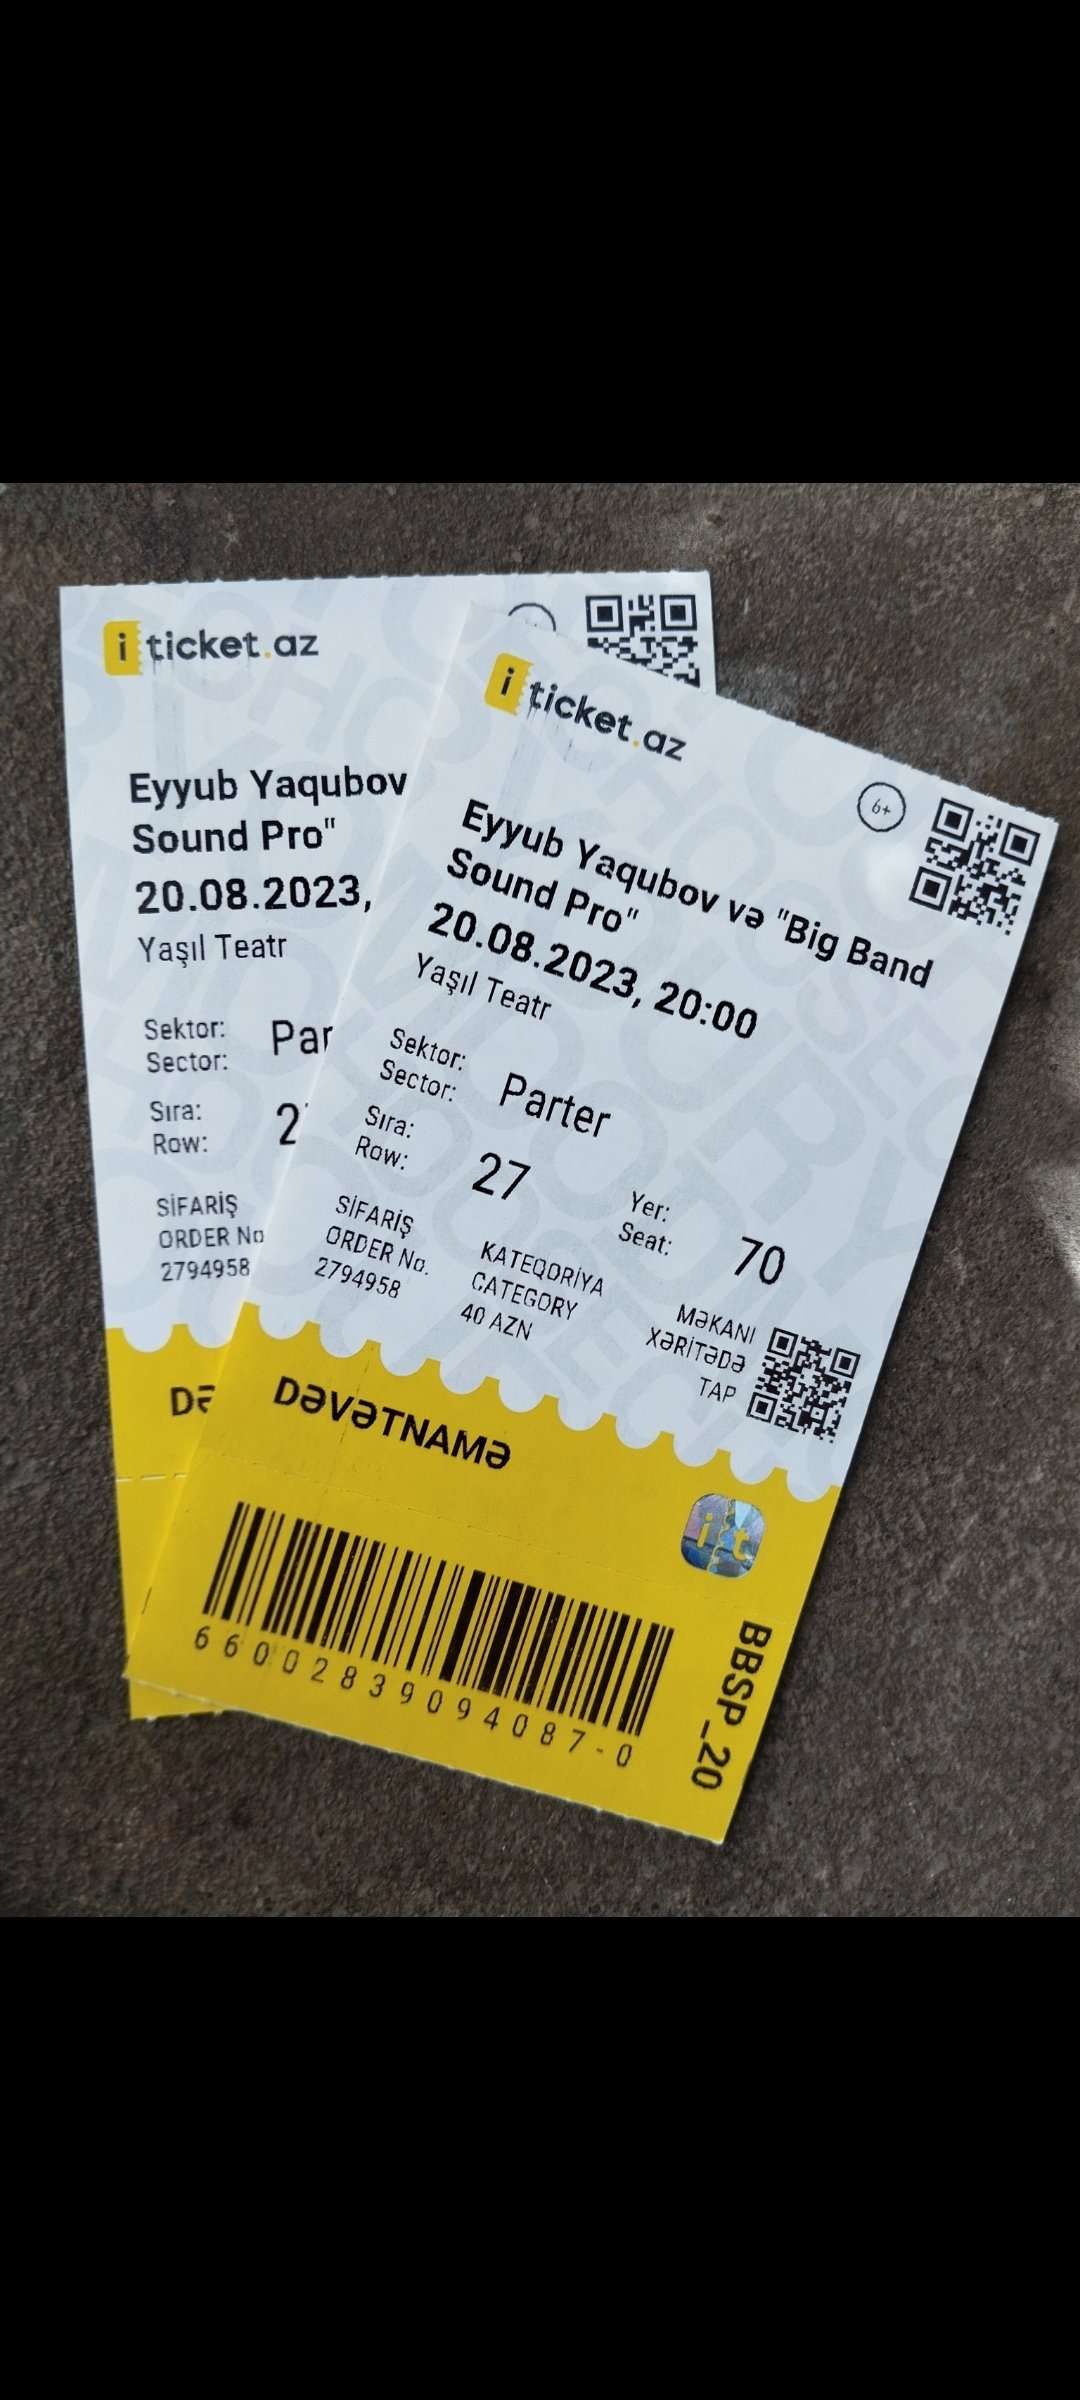 seller.az "Eyyub Yaqubov və Big Band Sound pro" konsertinə bilet